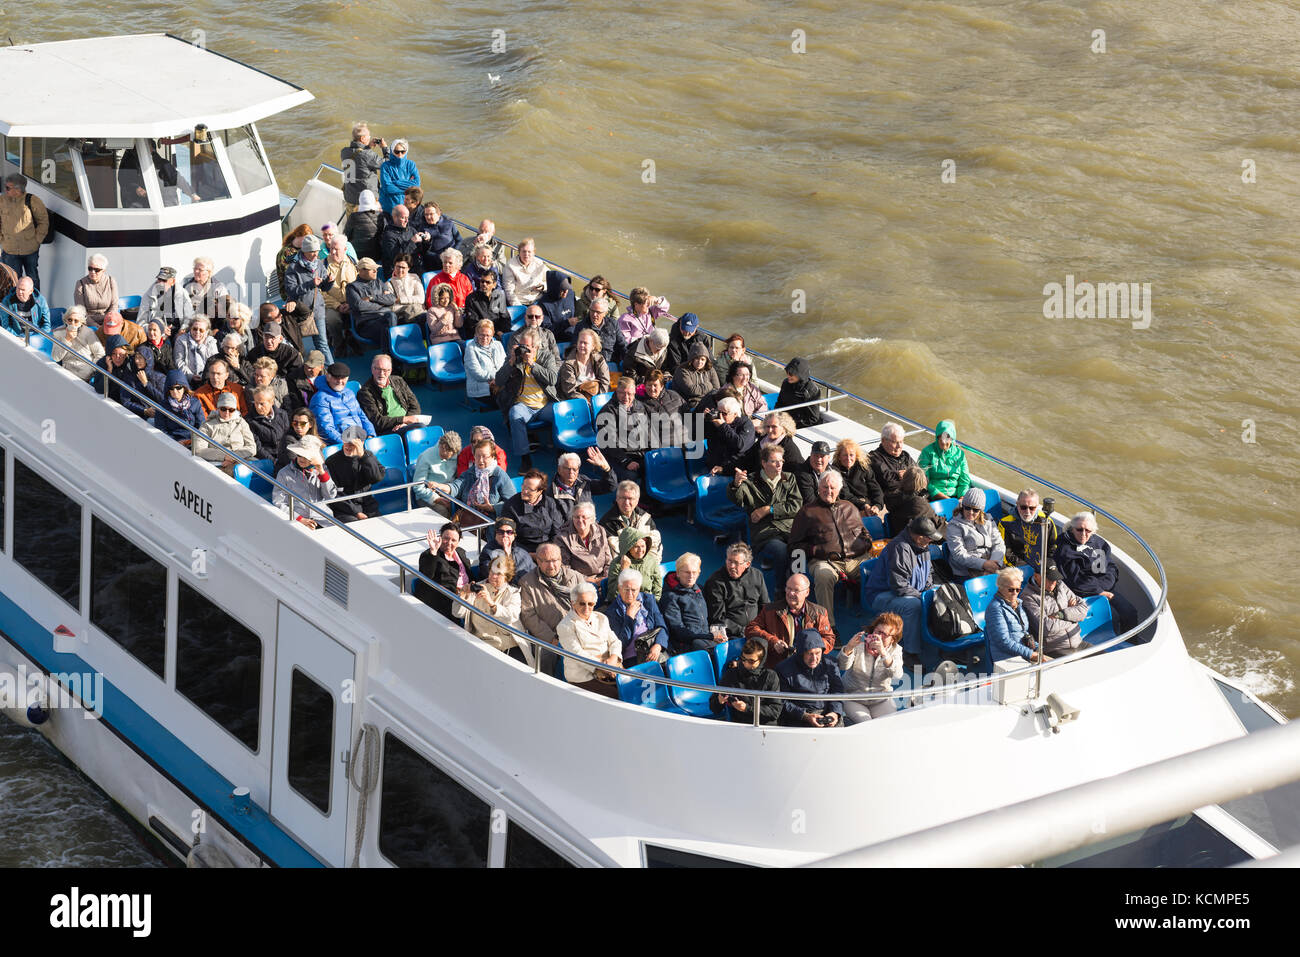 Les touristes et les voyants sur le haut d'un pont d'un croiseur de la rivière, sur la Tamise, Londres, Angleterre, Royaume-Uni, alors qu'il passe sous le pont du Millénaire. Banque D'Images